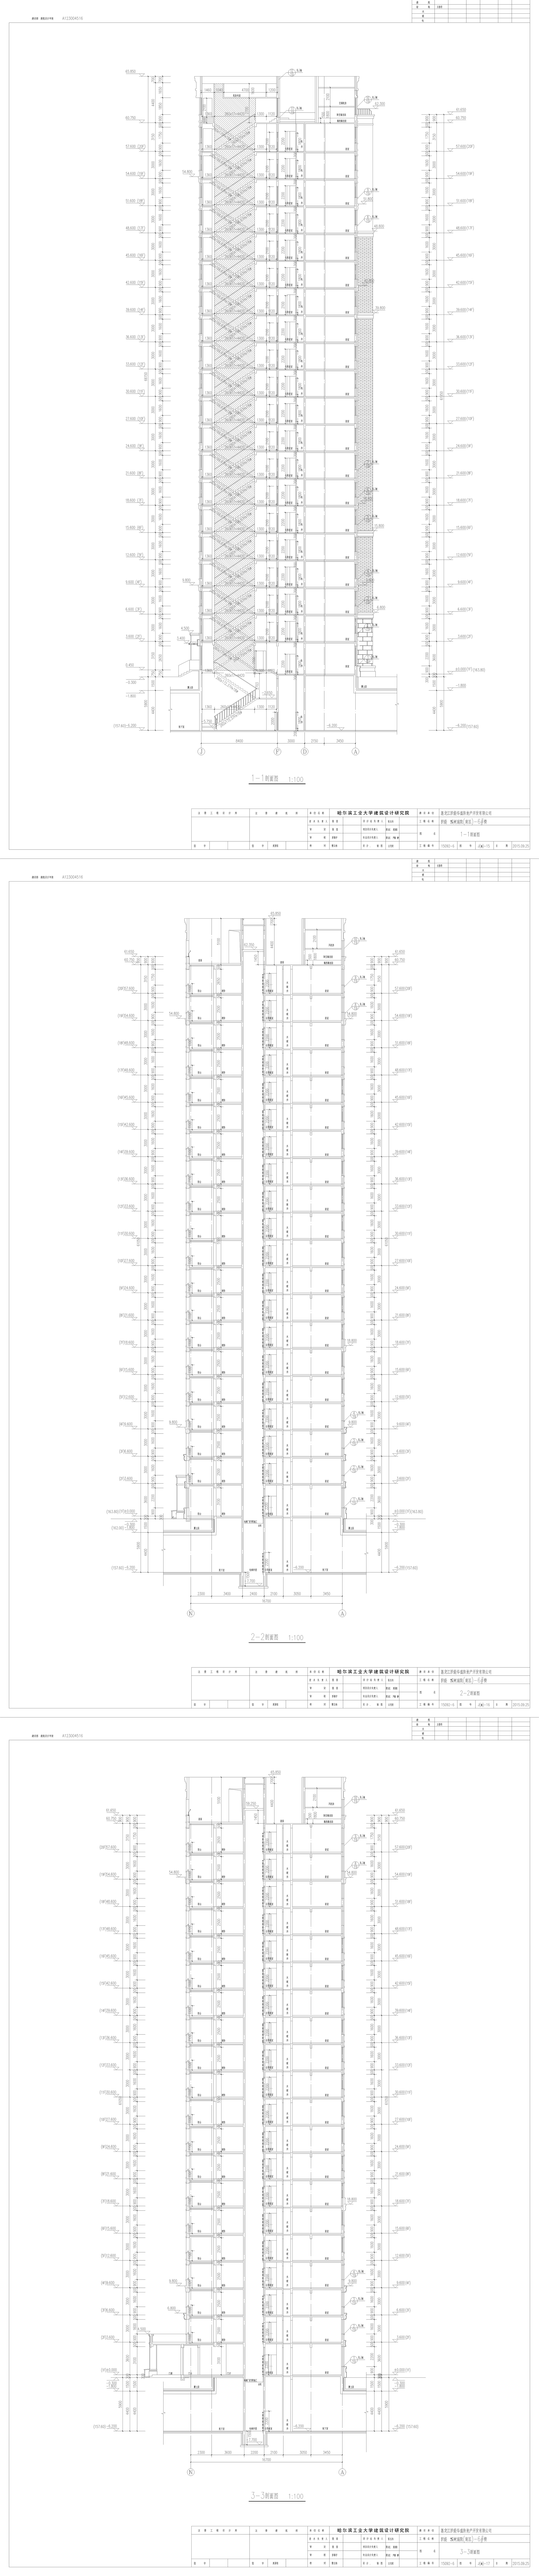 溪树庭院6号建筑专业全图